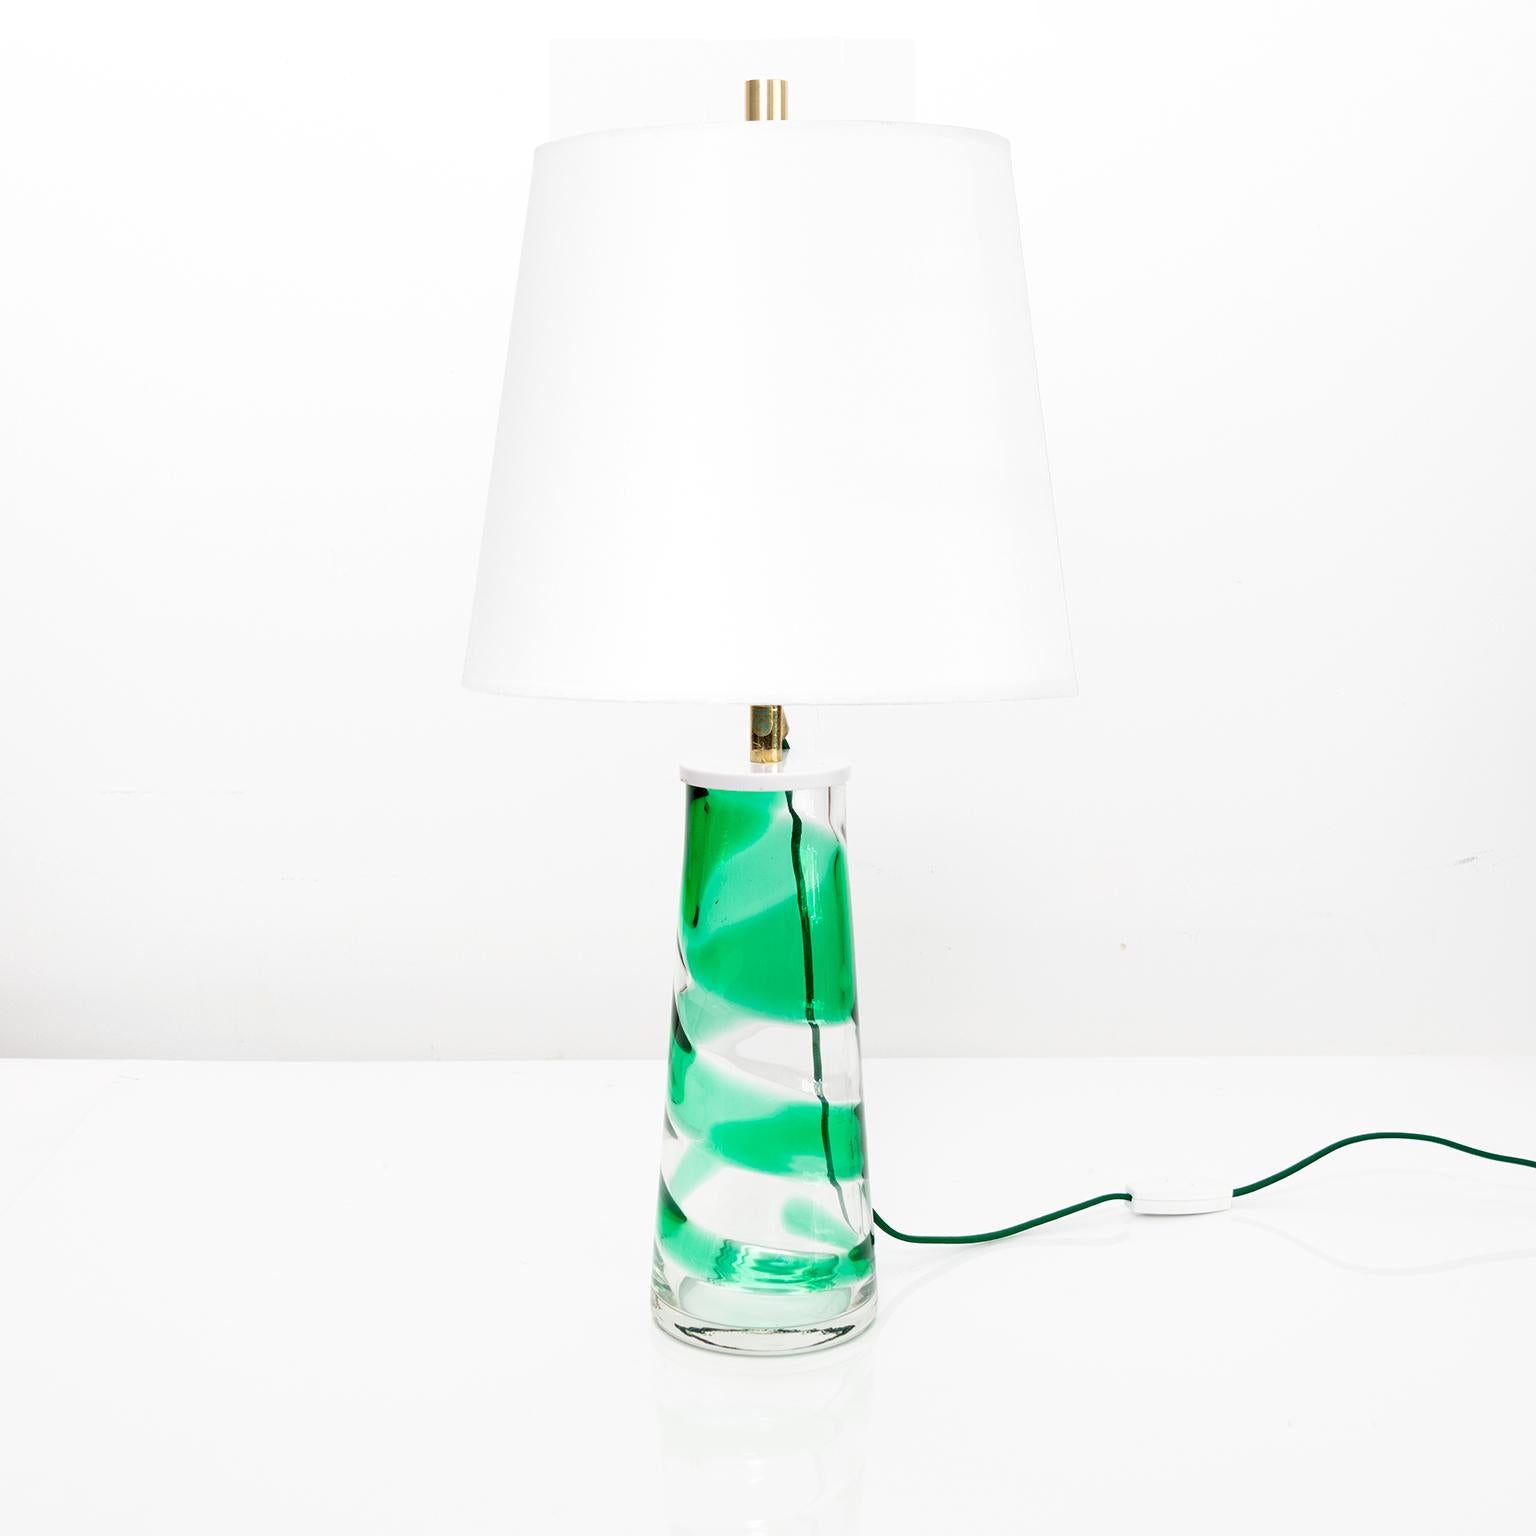 Lampe de table Philips en verre transparent du milieu du siècle avec une bande de verre vert en spirale. Nouvellement recâblé avec une seule prise à trois voies dans la harpe et l'embout légèrement patinés. L'abat-jour n'est pas inclus.

Mesures :